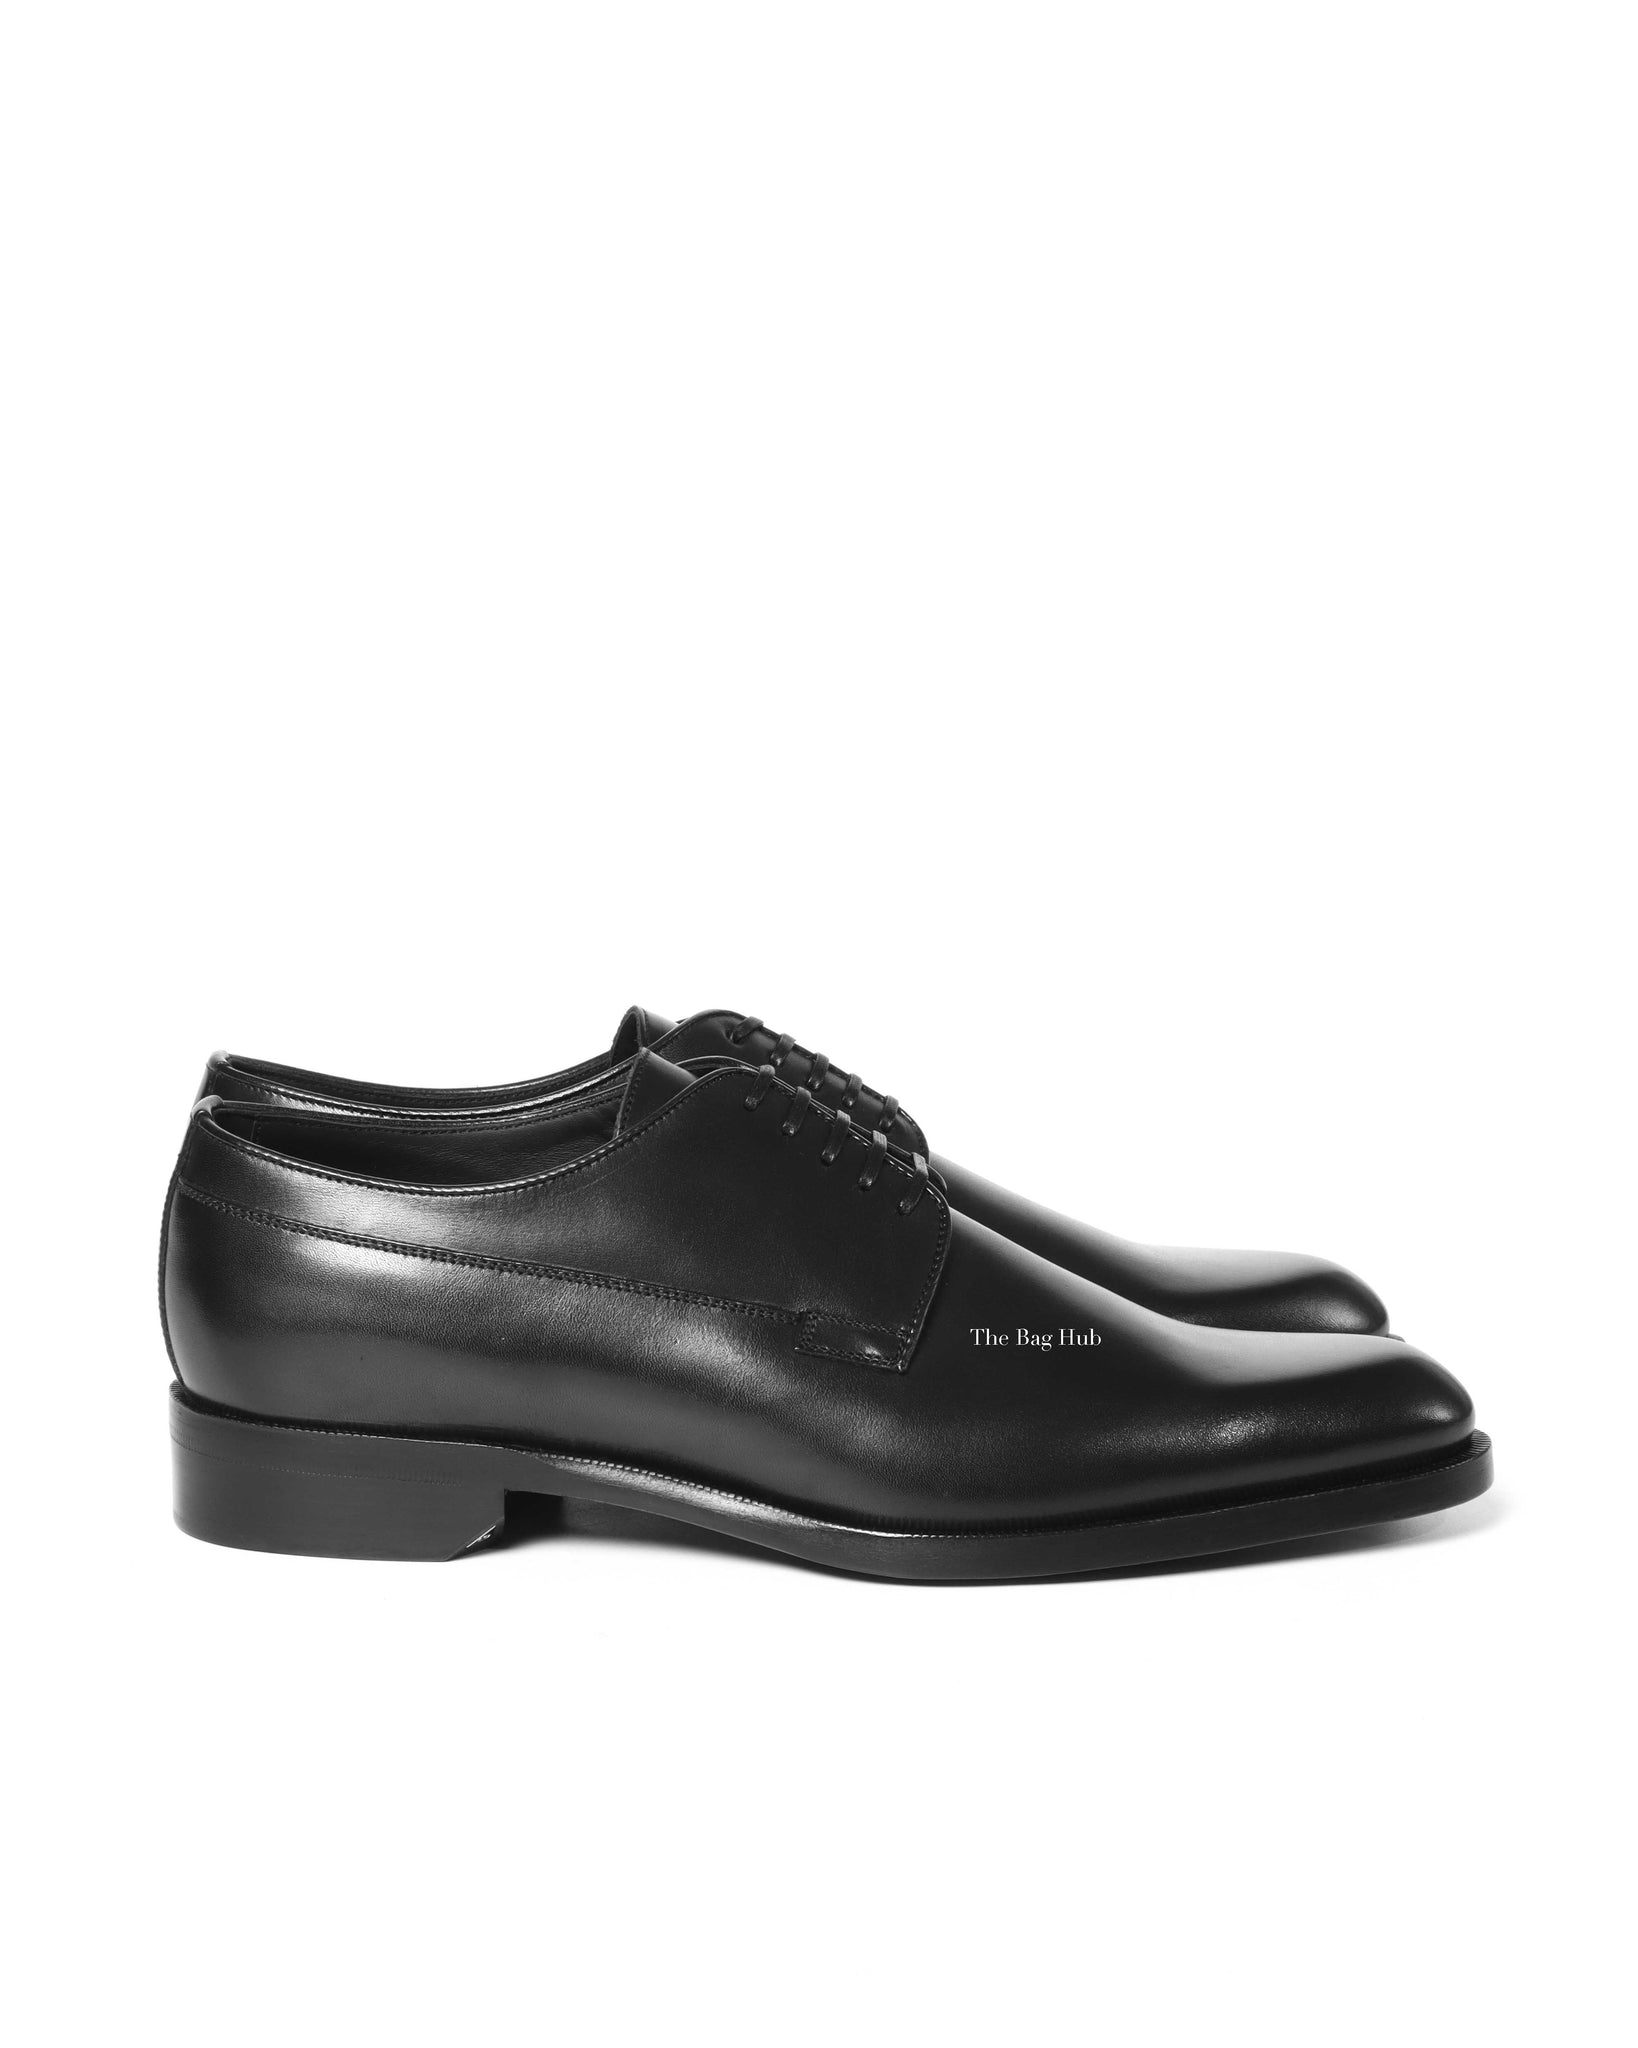 Dior Noir Leather Derby Lace Up Men's Shoes Size 40 - 4